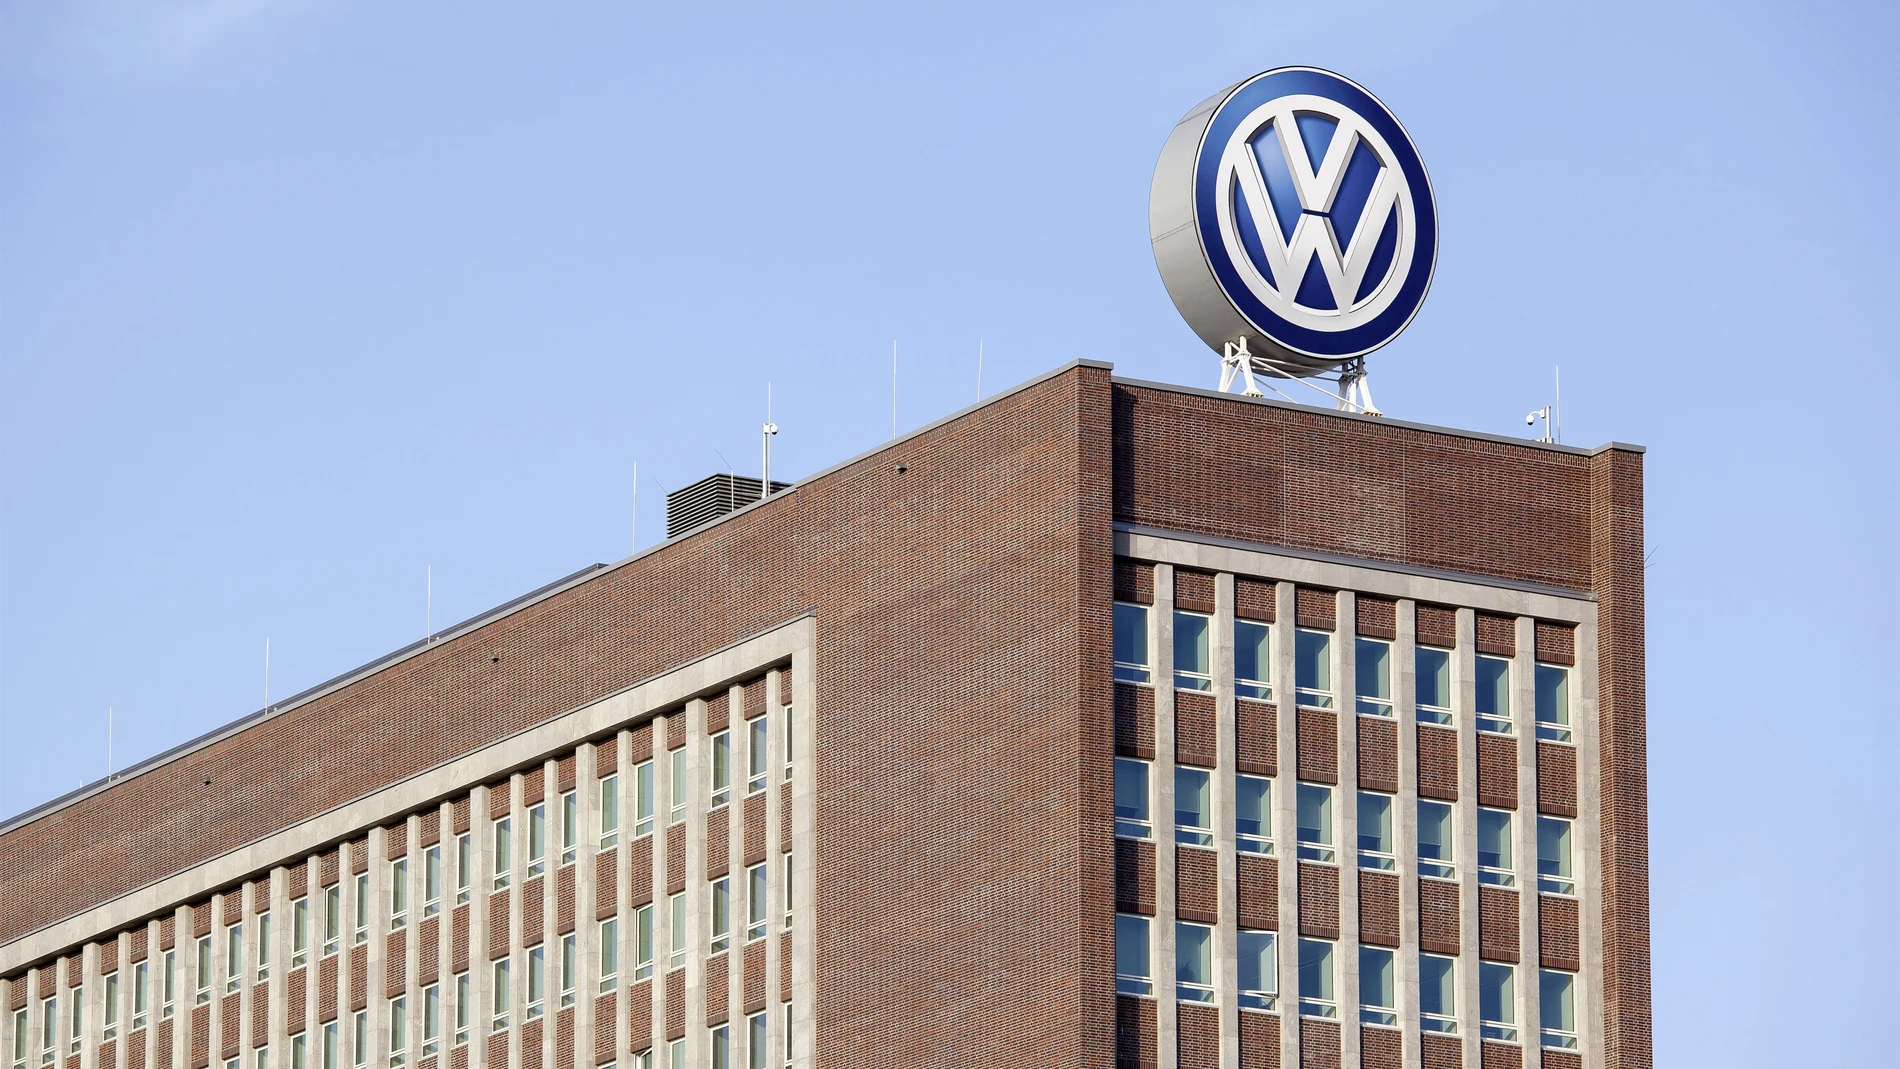 La Fiscalía alemana registra la sede de Volkswagen por presuntos pagos ilegales al comité de empresa